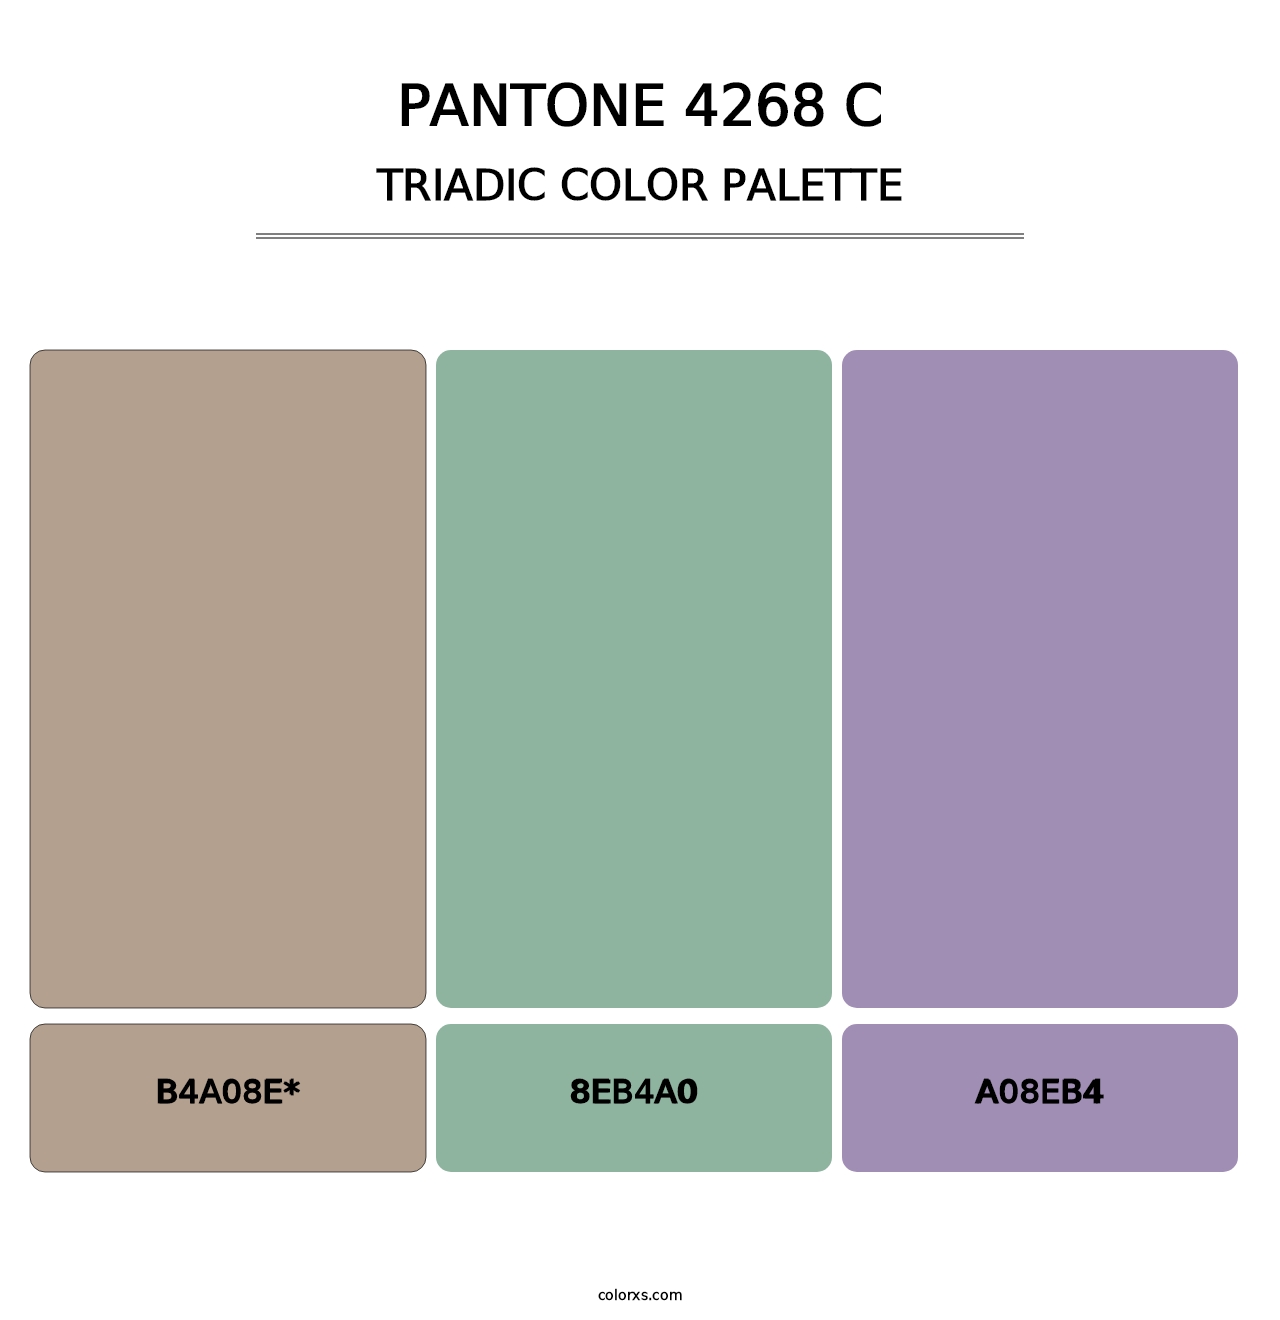 PANTONE 4268 C - Triadic Color Palette